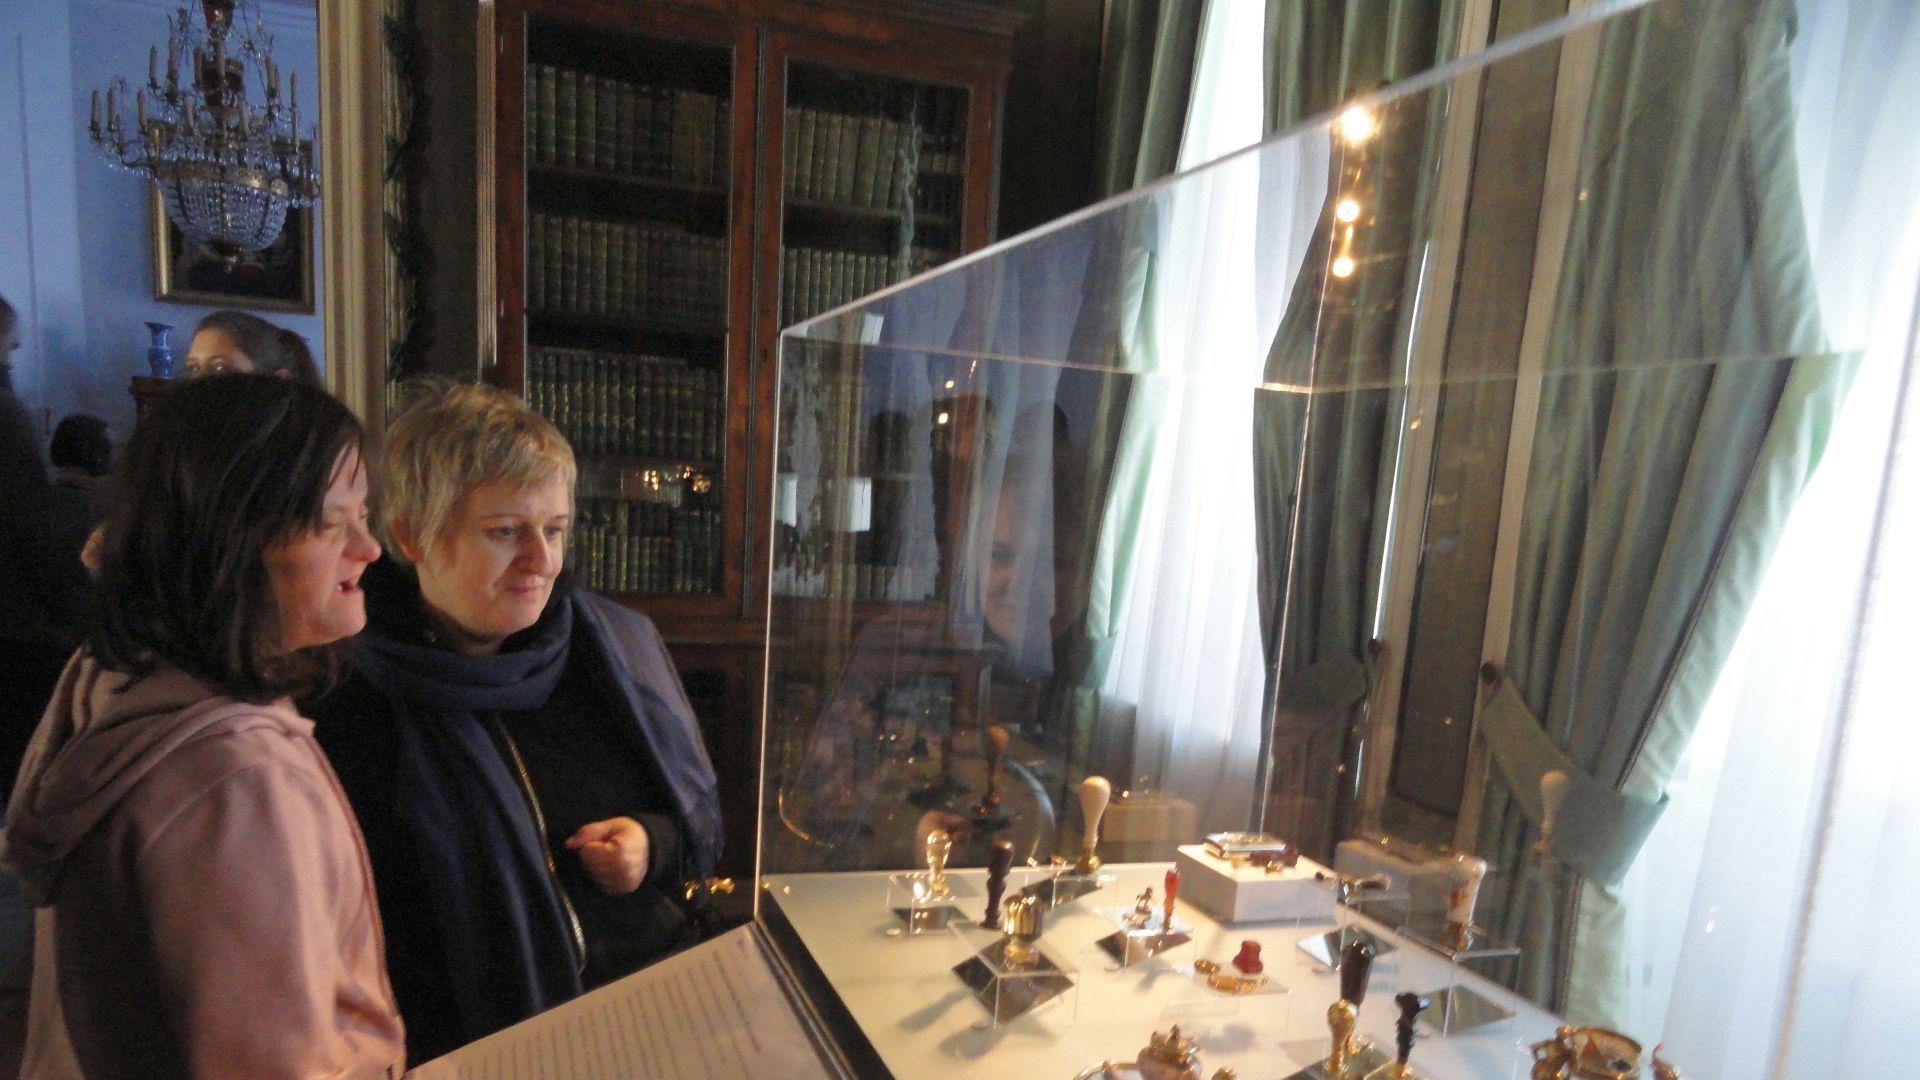 Pani dyrektor Justyna Juszczak wraz z Agnieszką P. oglądające wystawę w pałacu Radziwiłłów.